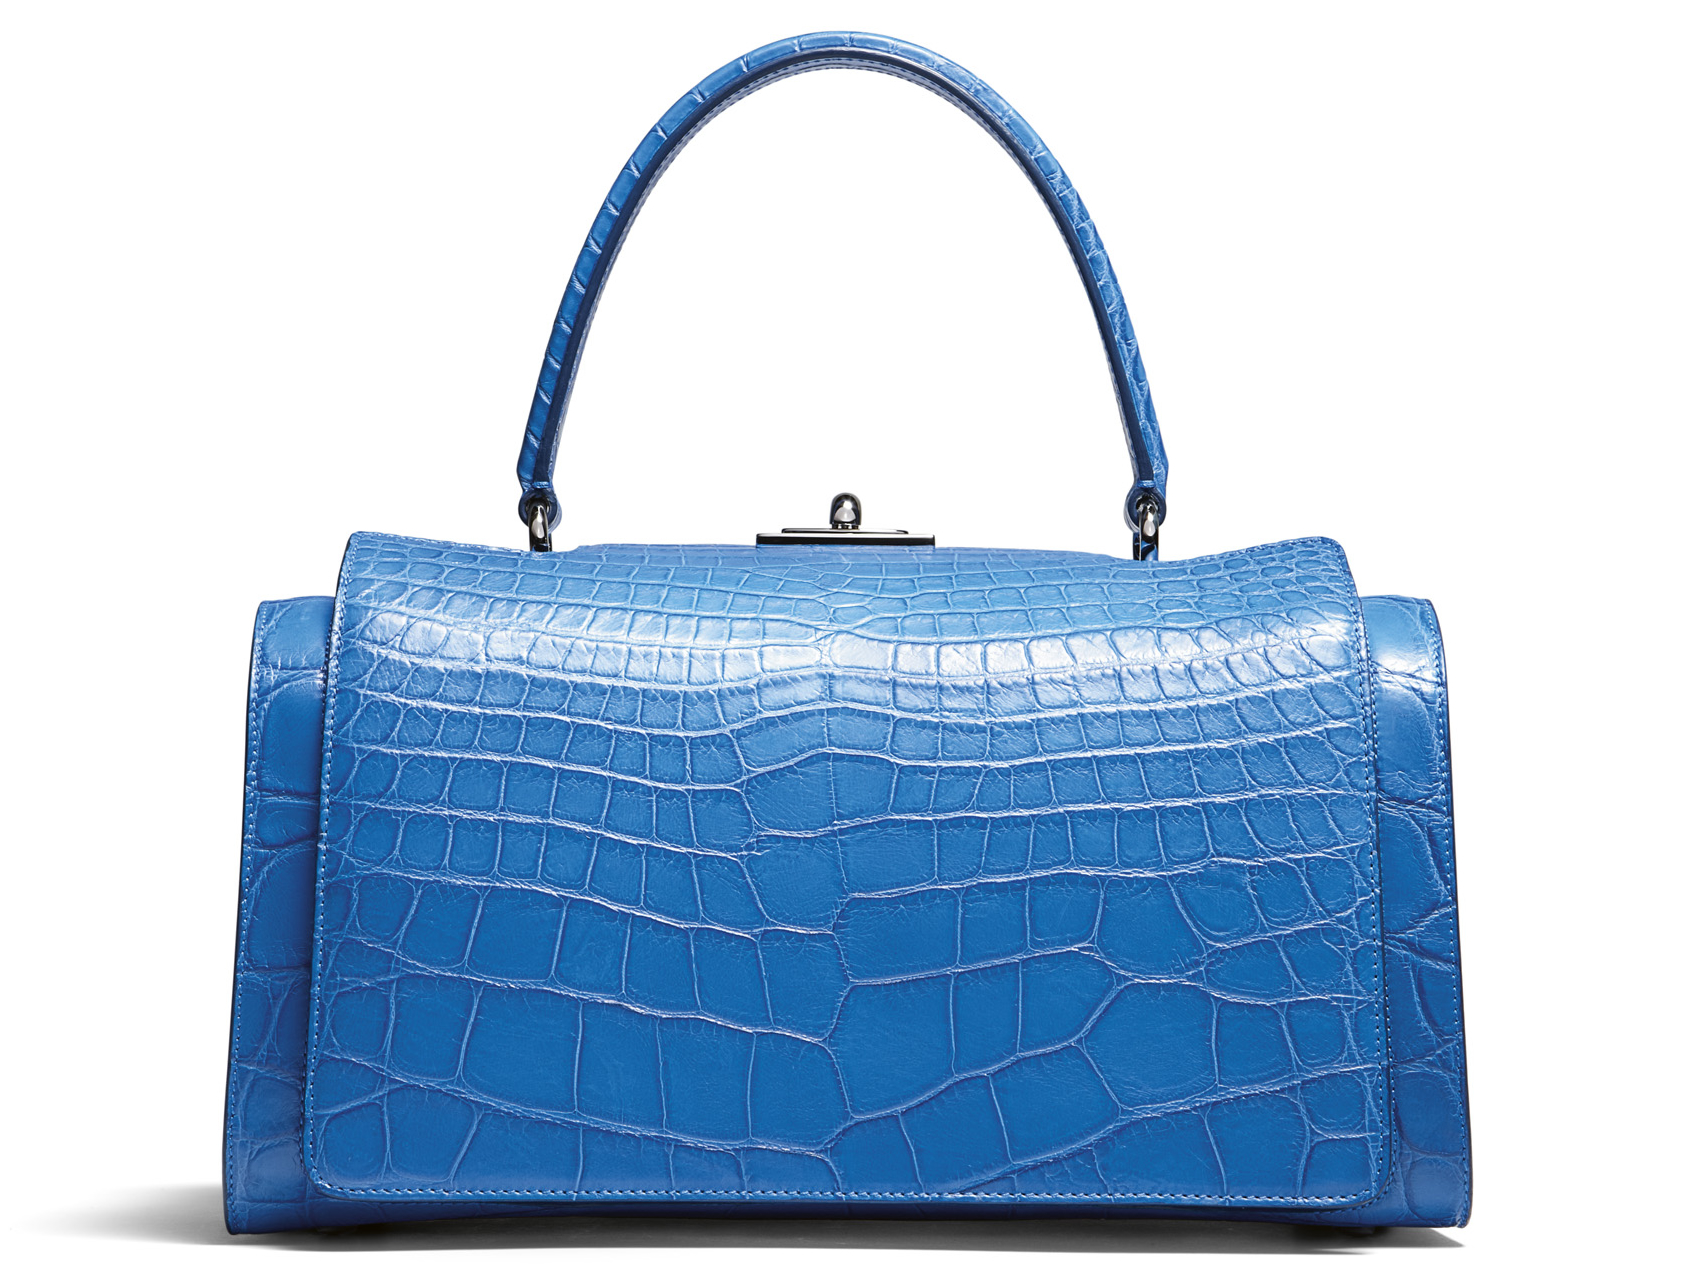 Asprey handbags in exotic skins scream fashion : Luxurylaunches